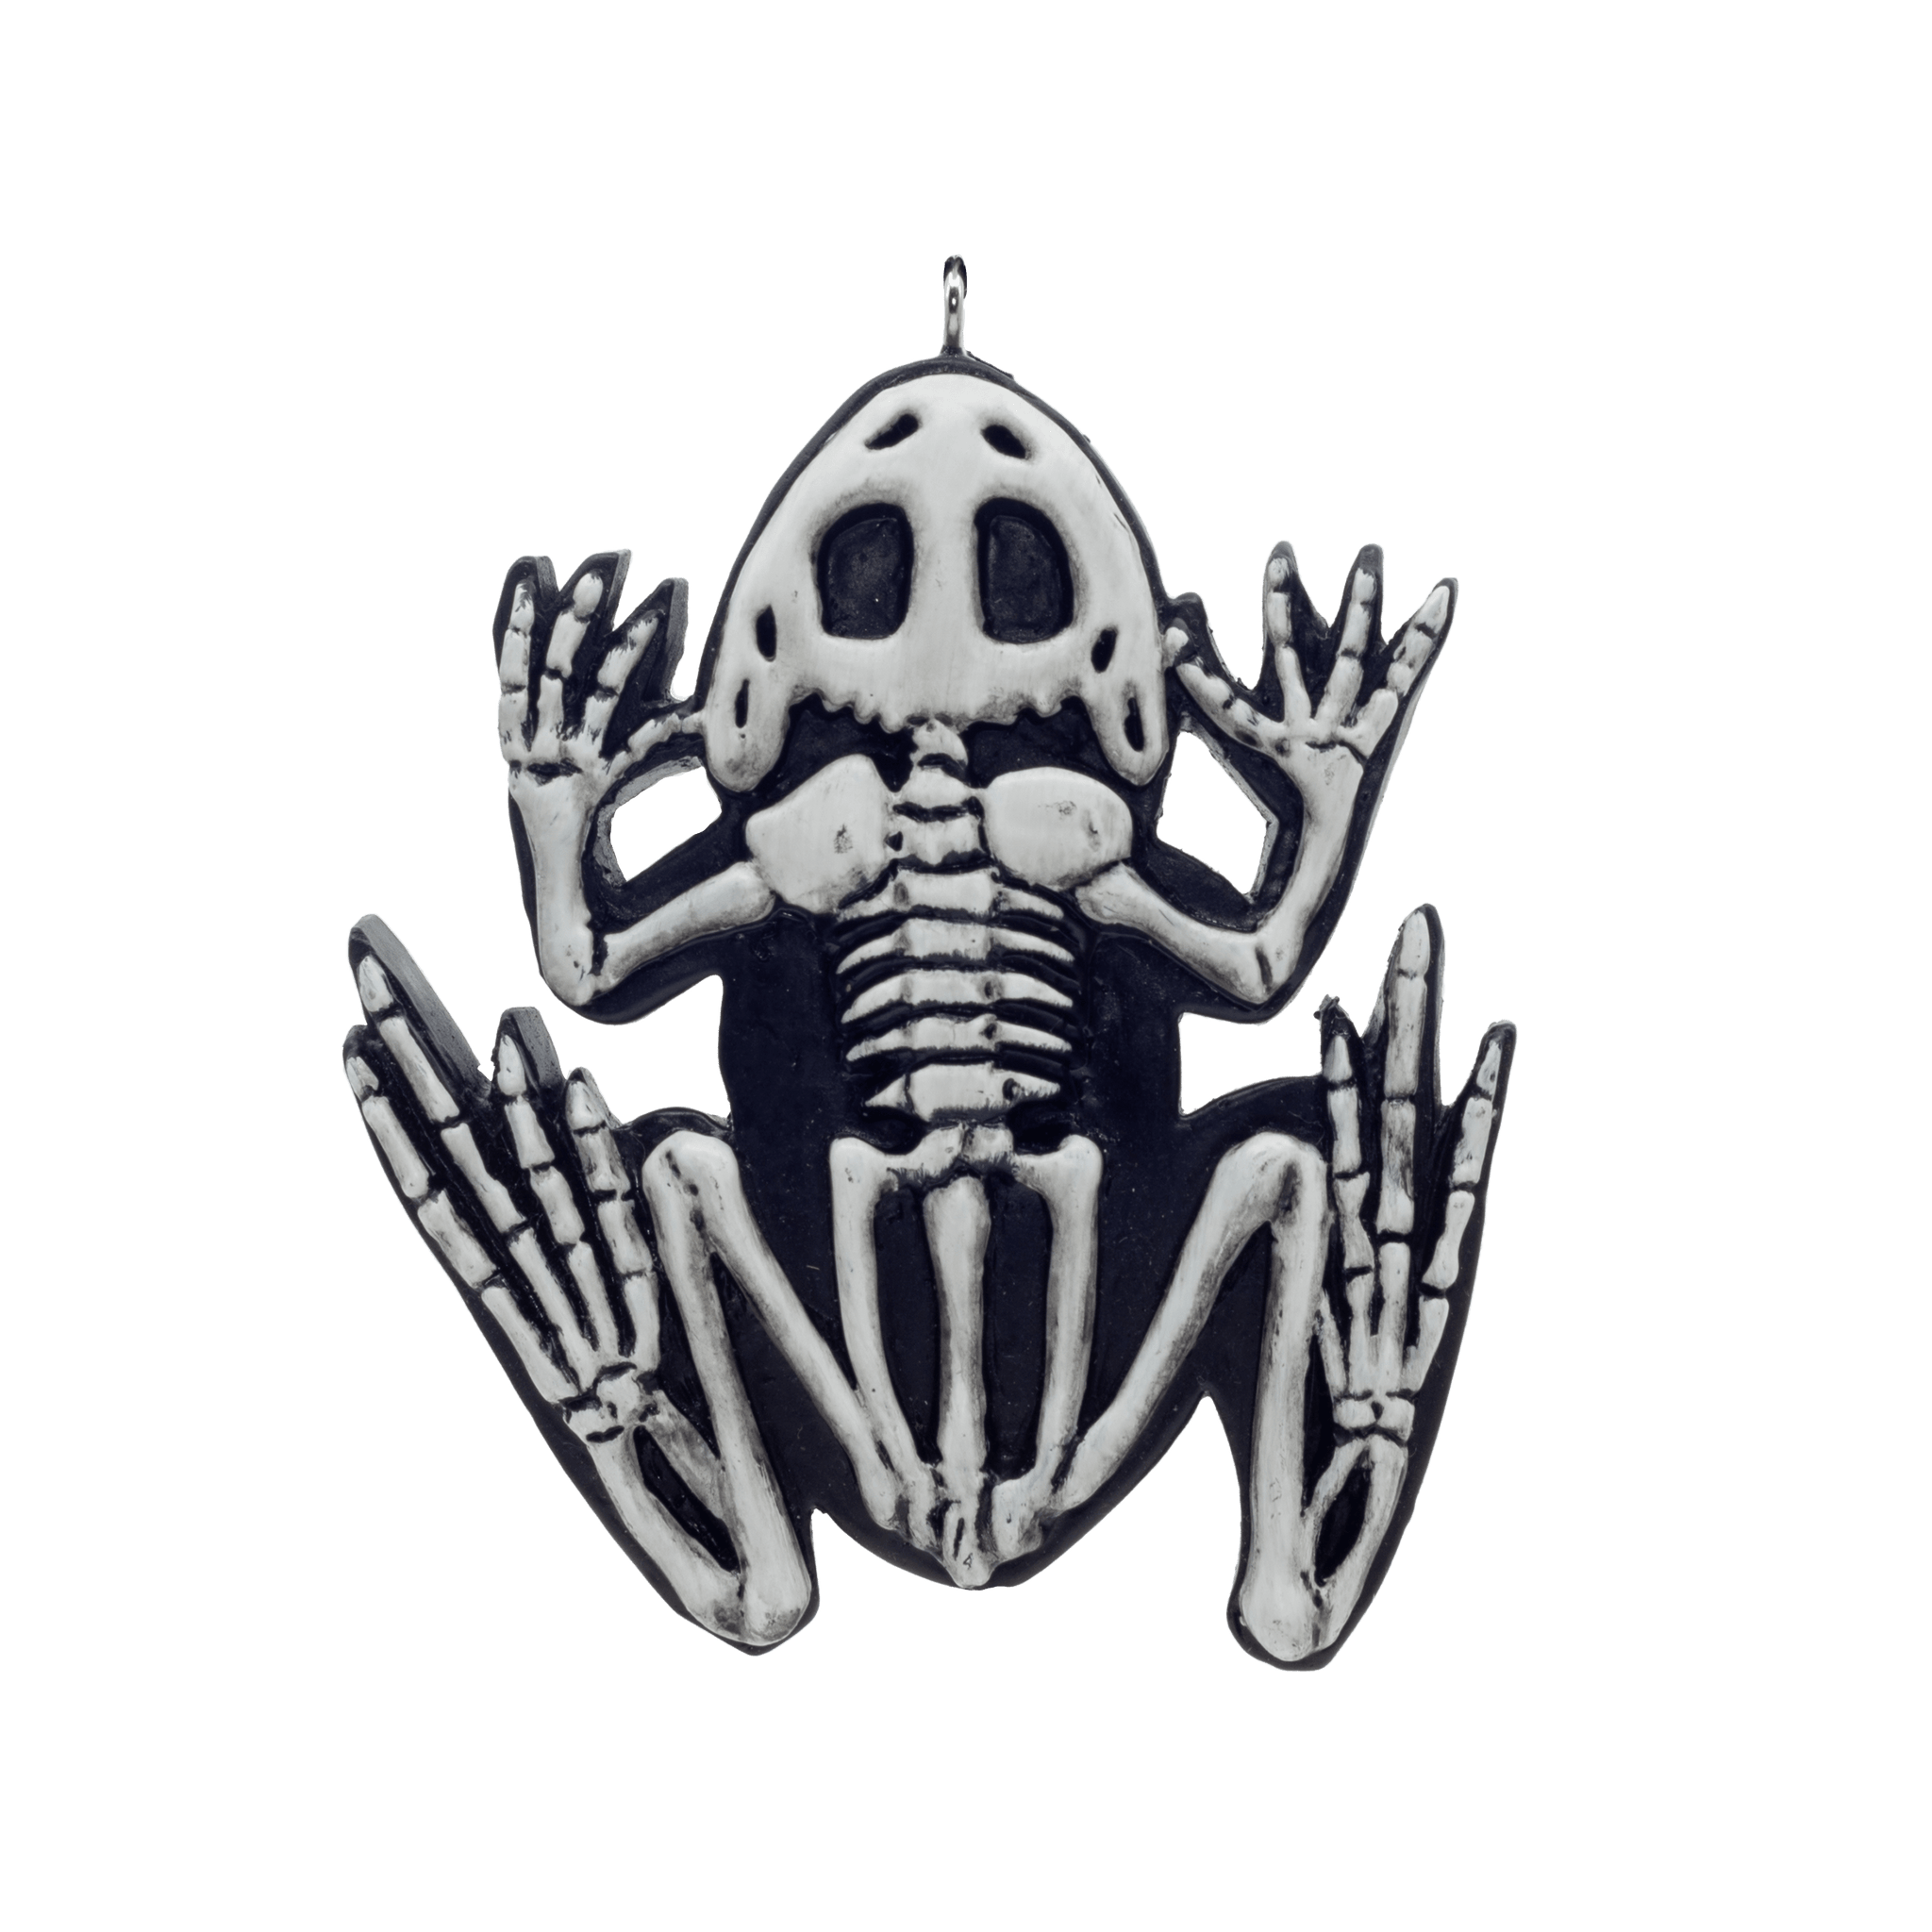 frog skeleton